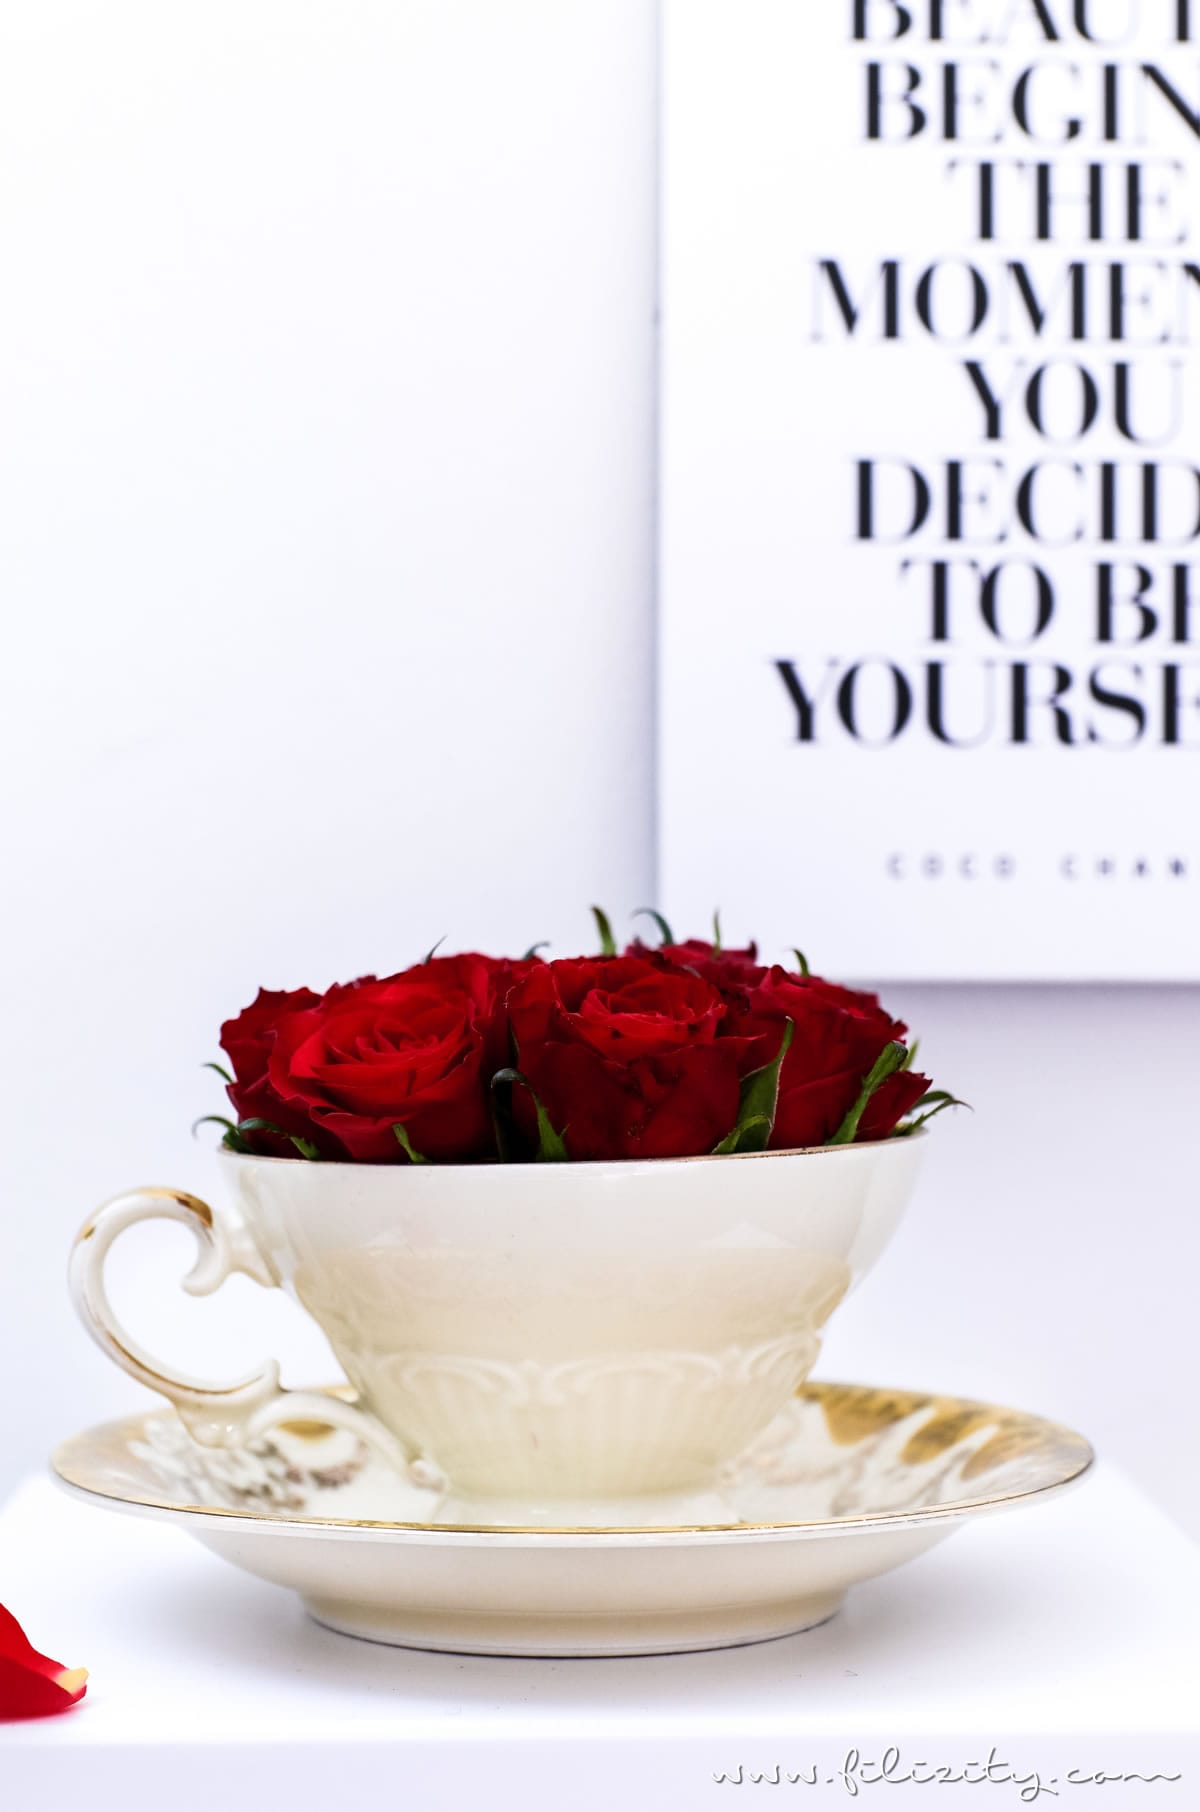 3x Flowerbox selber machen - DIY Geschenkidee für Valentinstag, Muttertag, Geburtstag usw. | DIY Deko mit Blumen | Filizity.com | DIY-Blog aus dem Rheinland #valentinstag #muttertag #geschenkidee #geburtstag #flowerbox